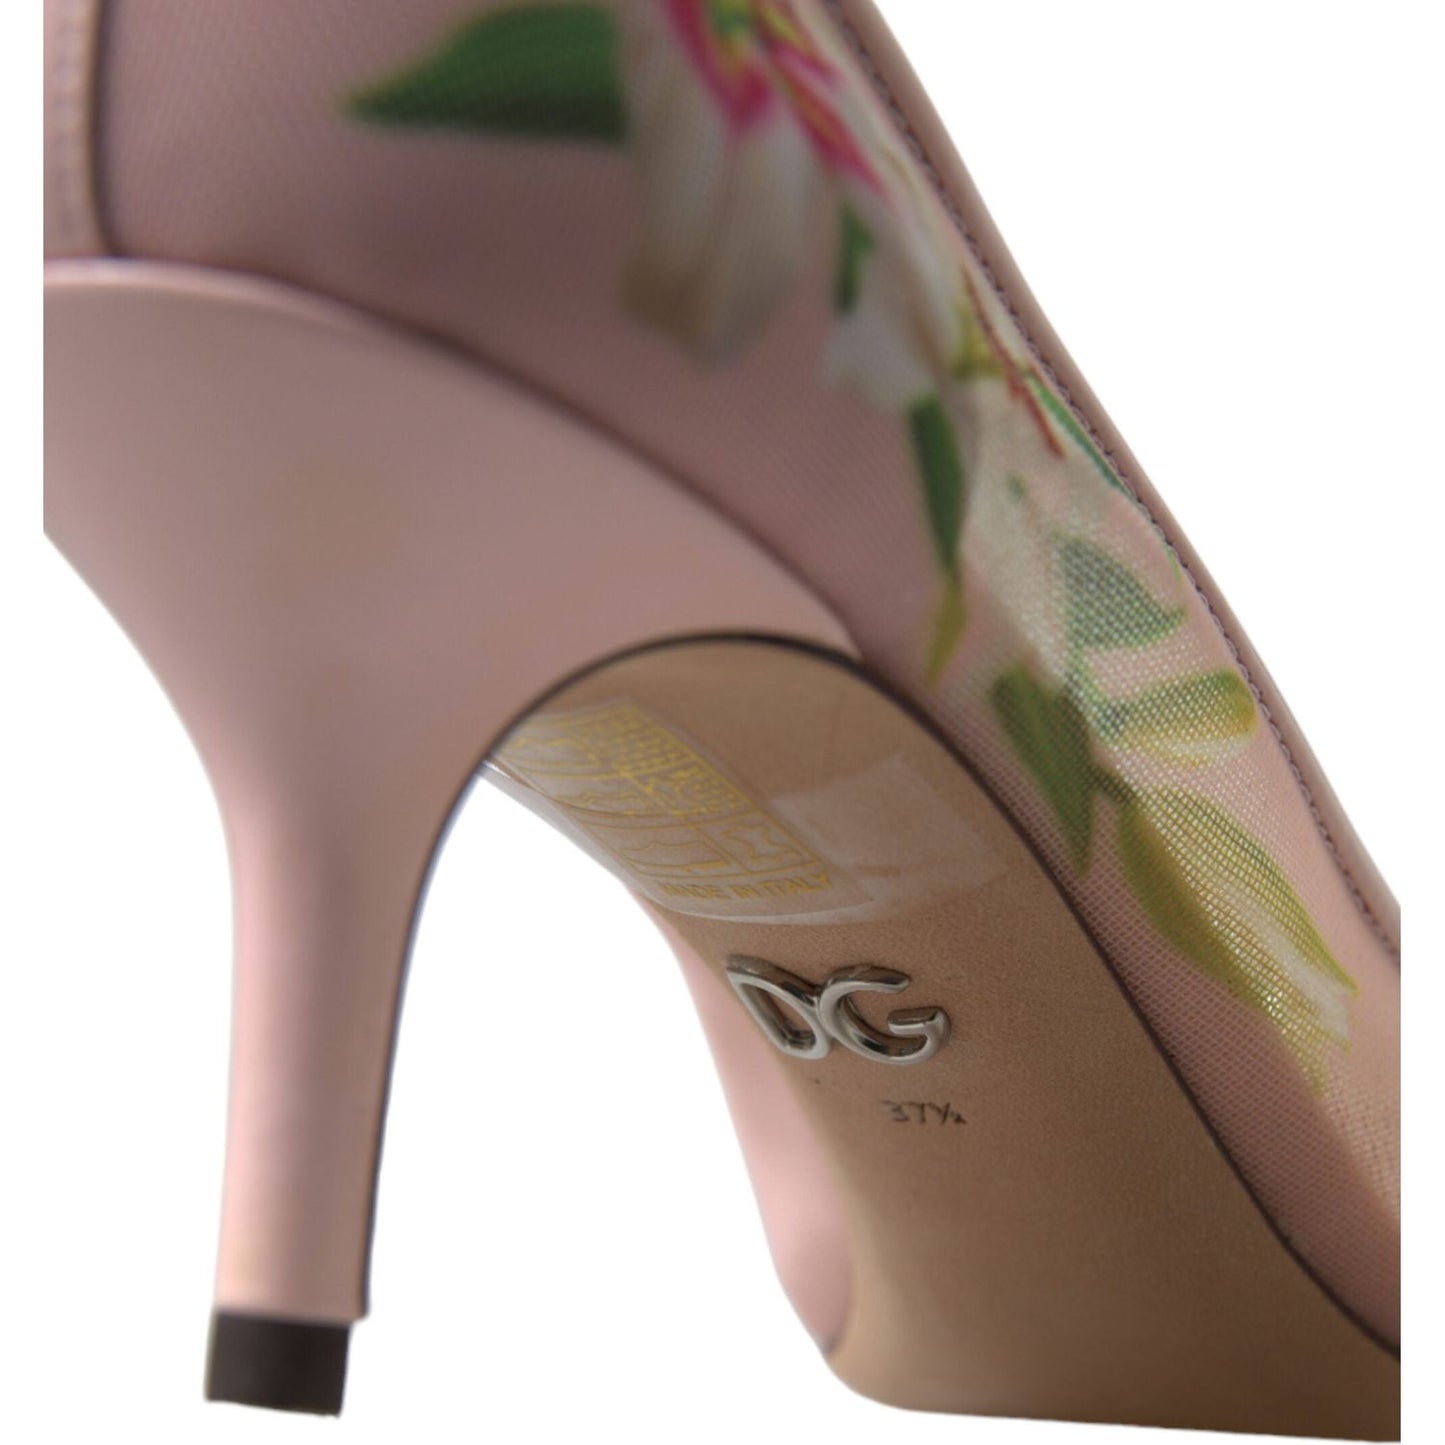 Dolce & Gabbana Elegant Pink Floral Crystal Pumps pink-floral-crystal-heels-pumps-shoes 465A9566-bg-scaled-36684d86-982.jpg